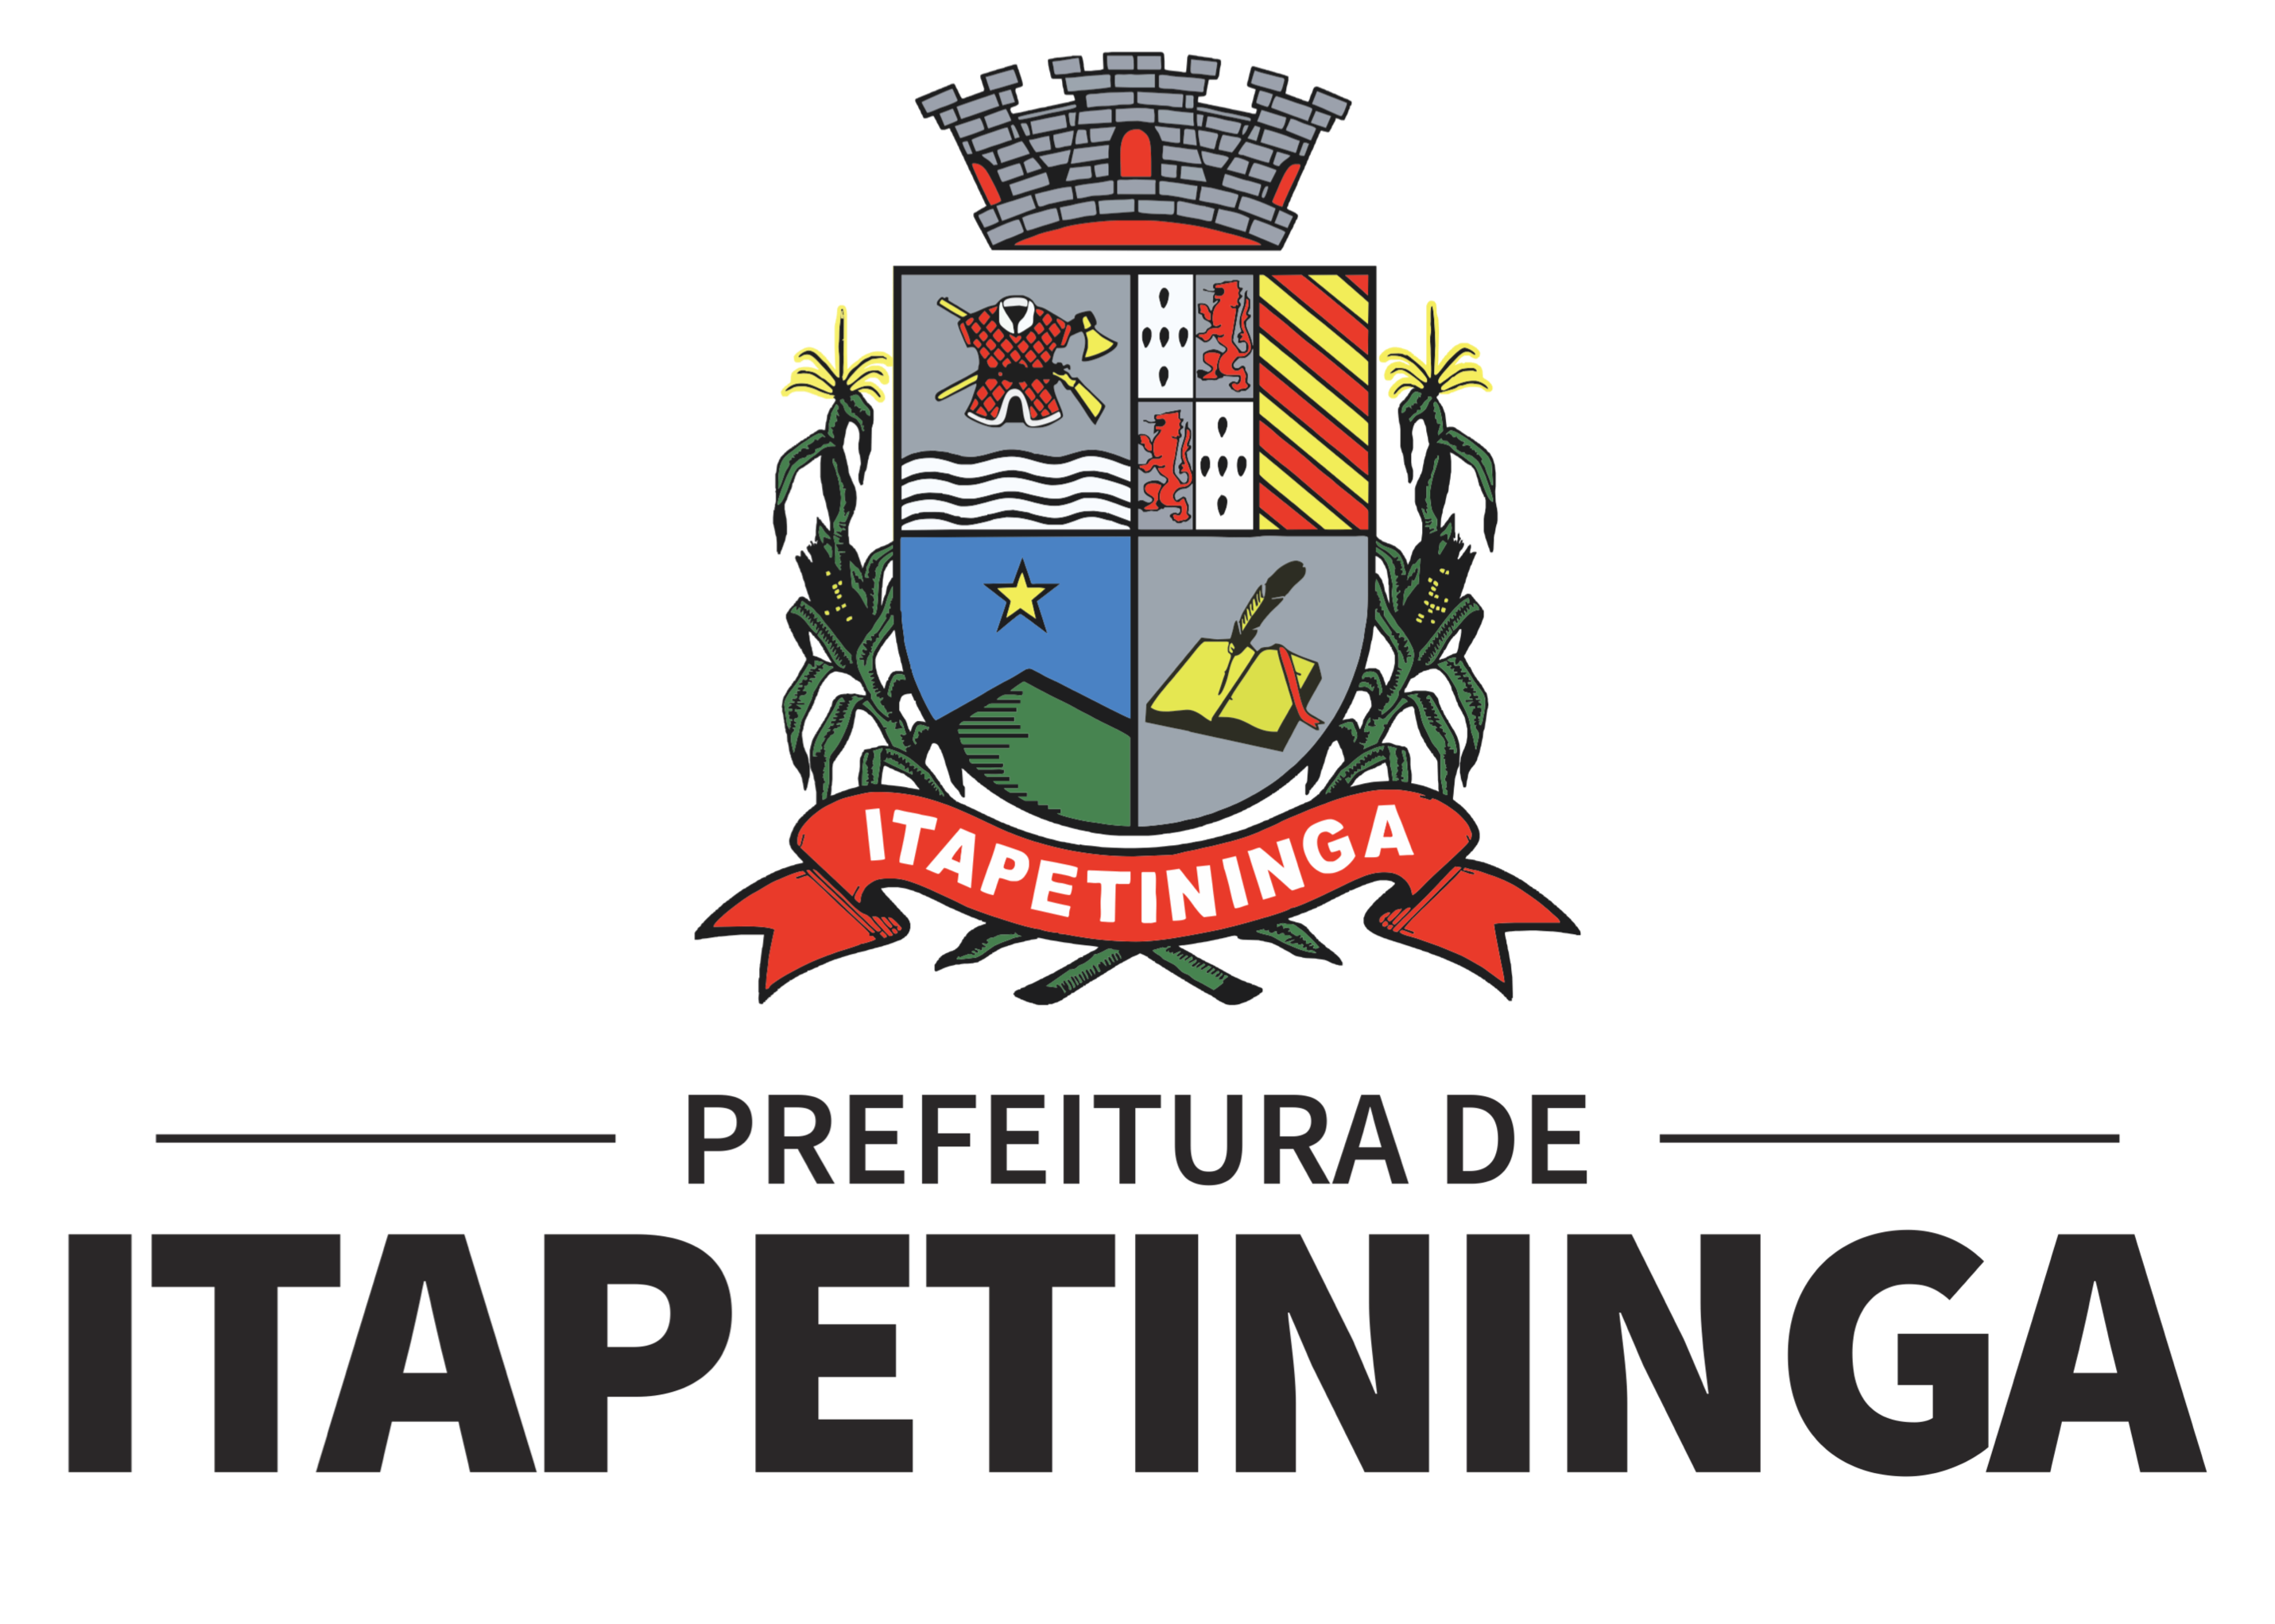 Prefeitura de Itapetininga Logo